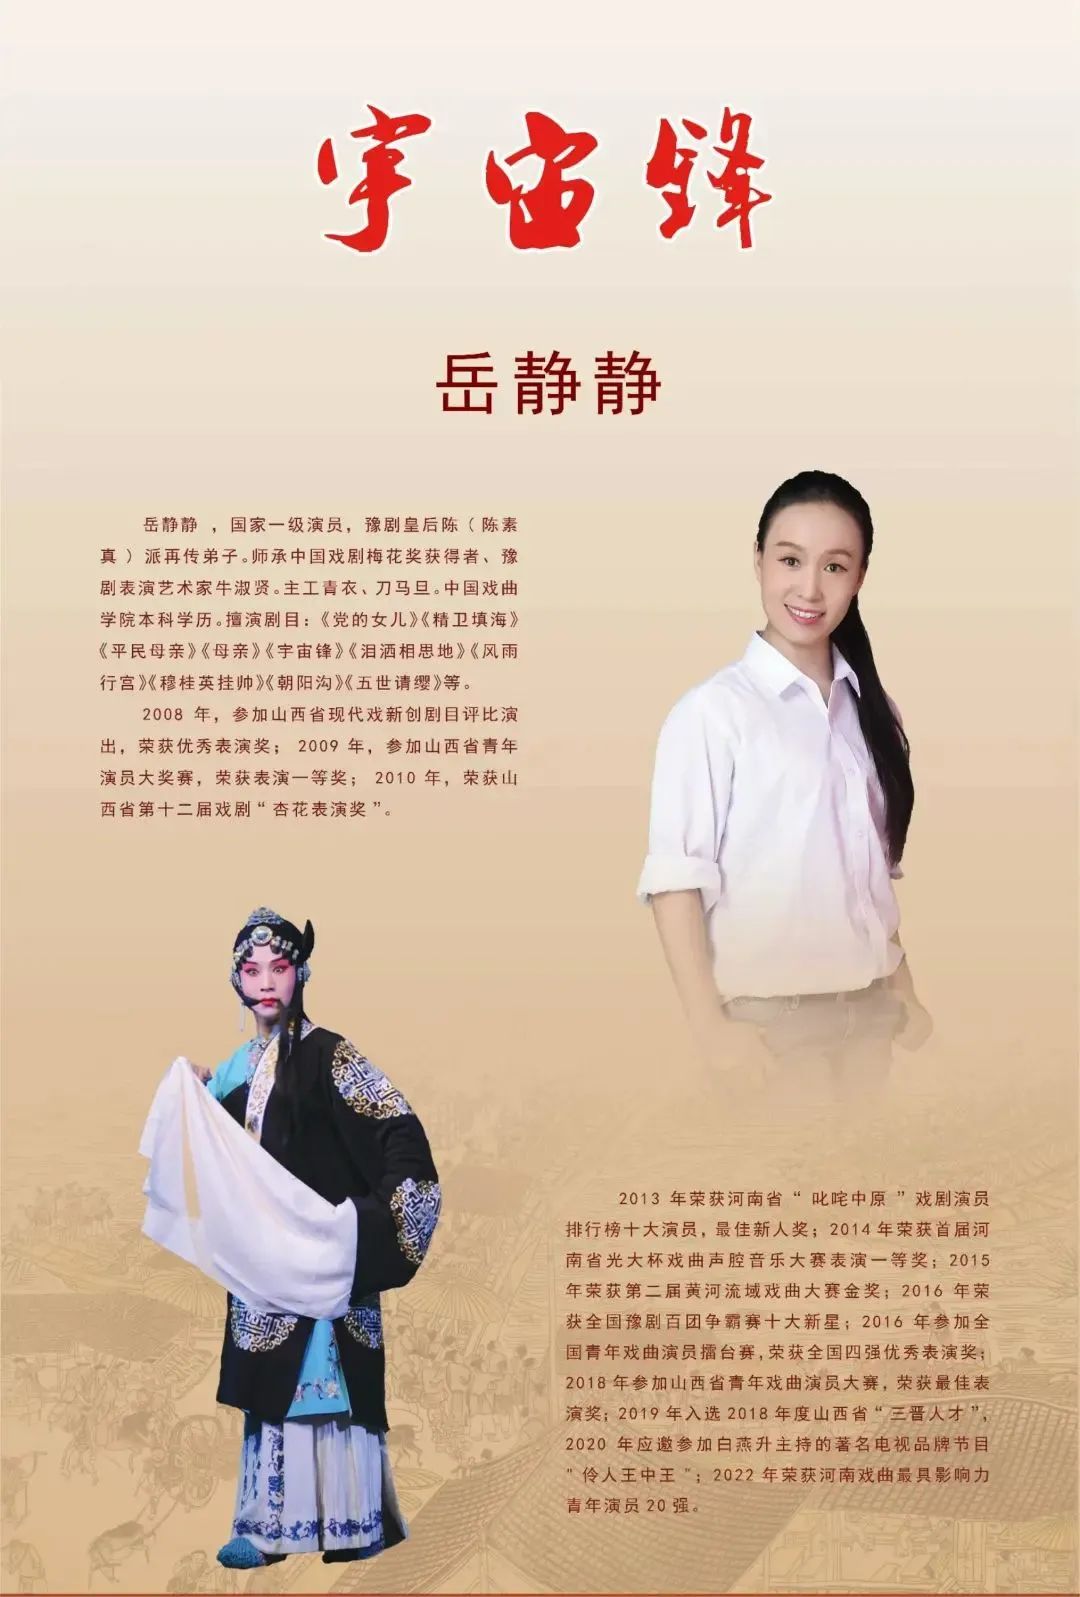 豫剧员岳静静获得第五届豫剧艺术节表演艺术传承英才荣誉称号